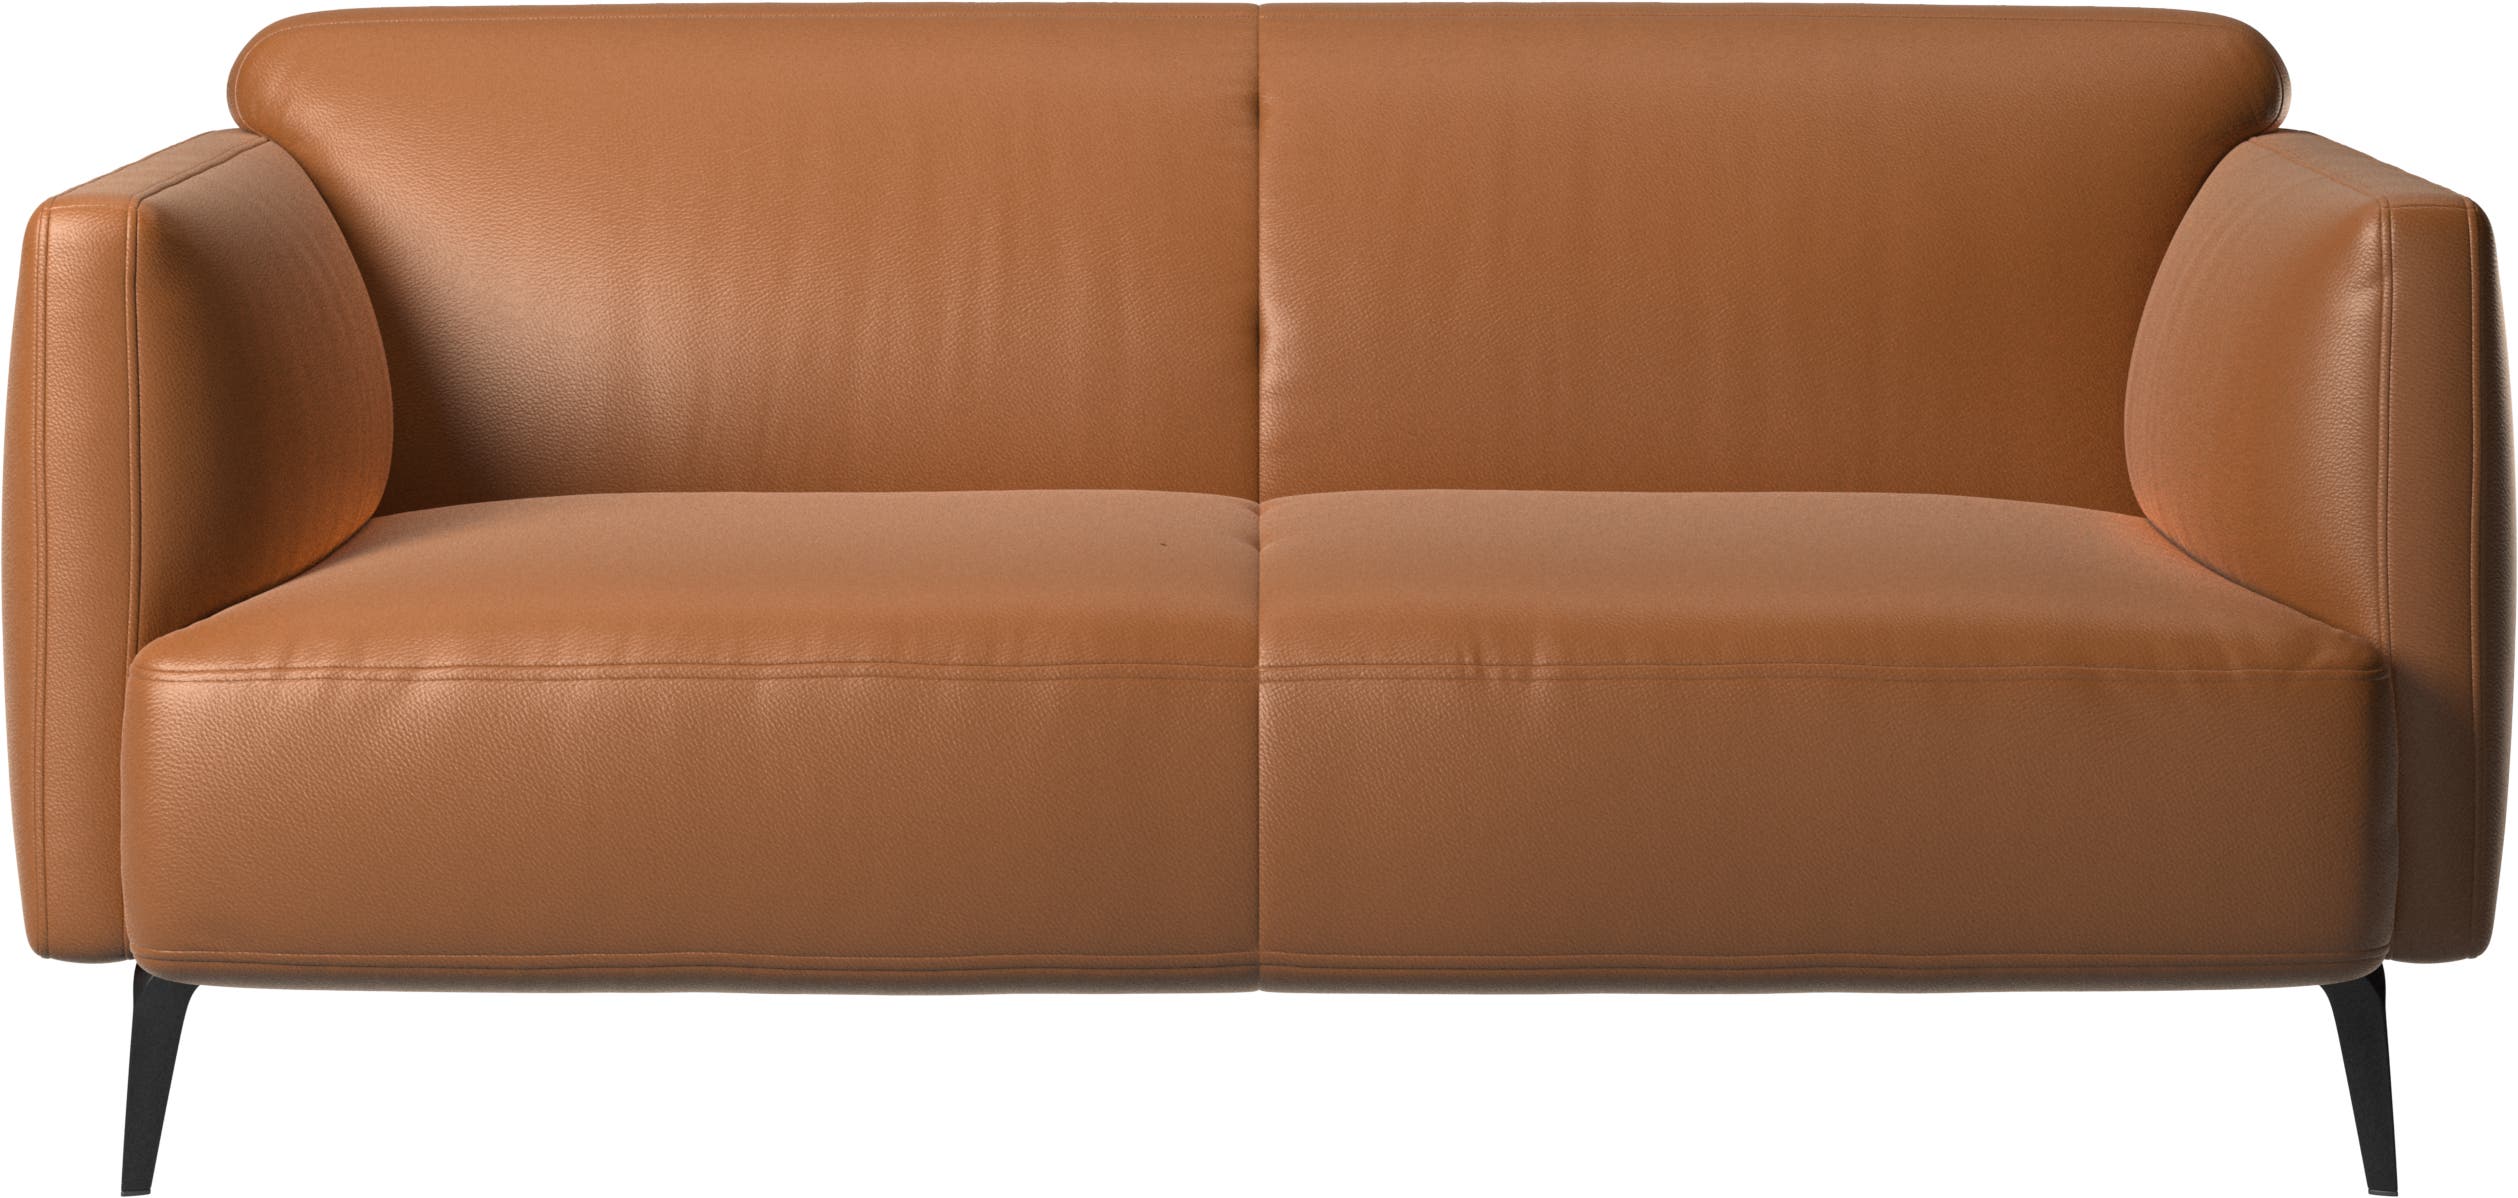 Modena 2-személyes kanapé